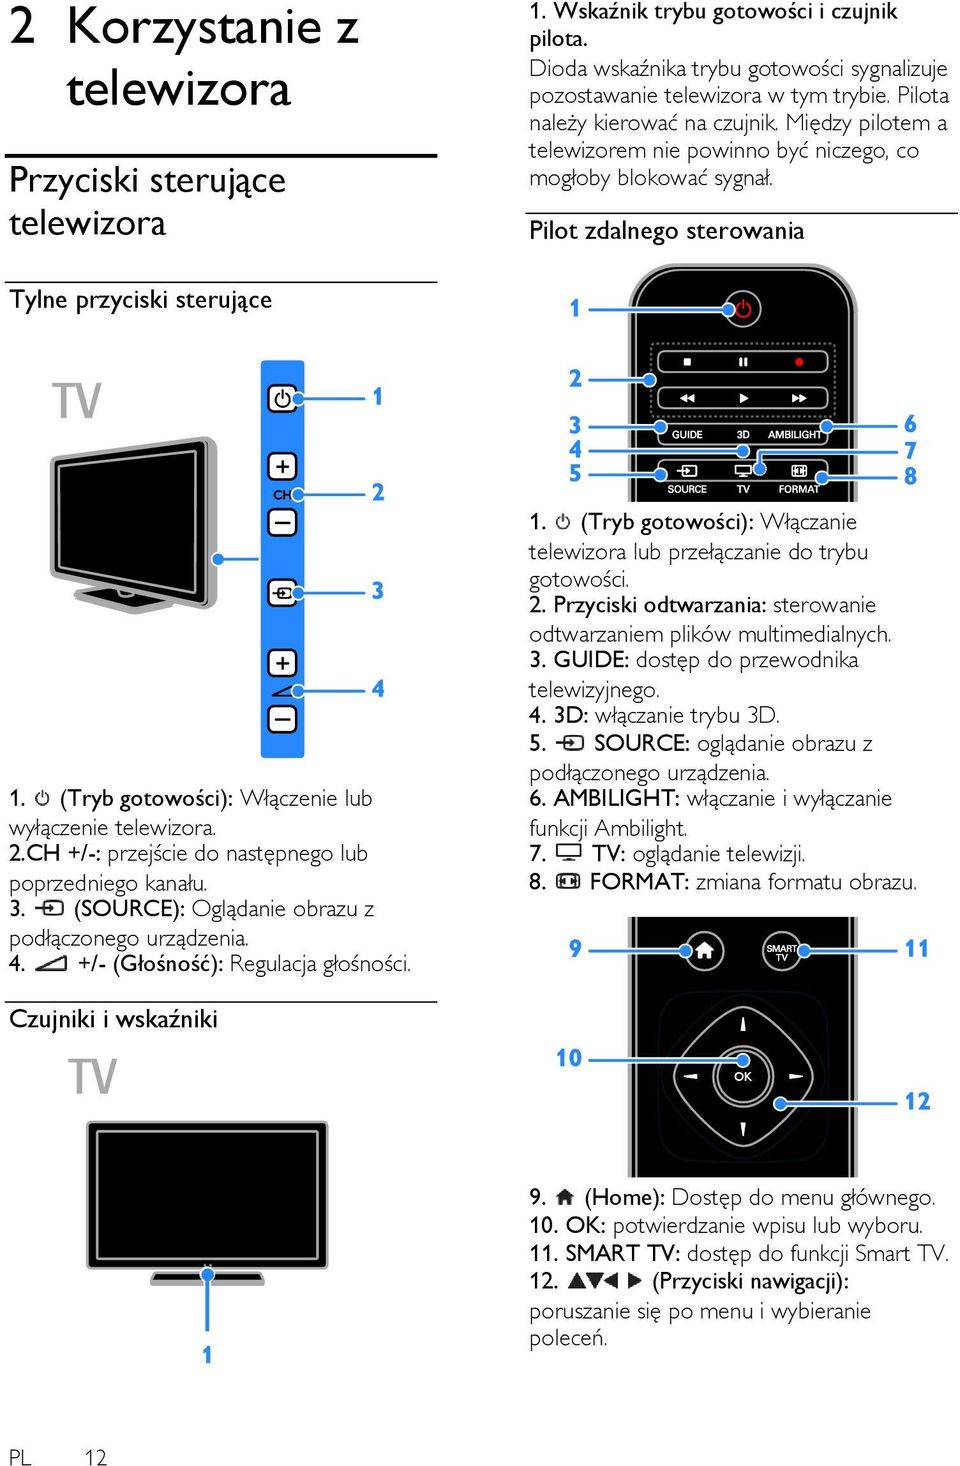 (Tryb gotowości): Włączenie lub wyłączenie telewizora. 2.CH +/-: przejście do następnego lub poprzedniego kanału. 3. (SOURCE): Oglądanie obrazu z podłączonego urządzenia. 4.